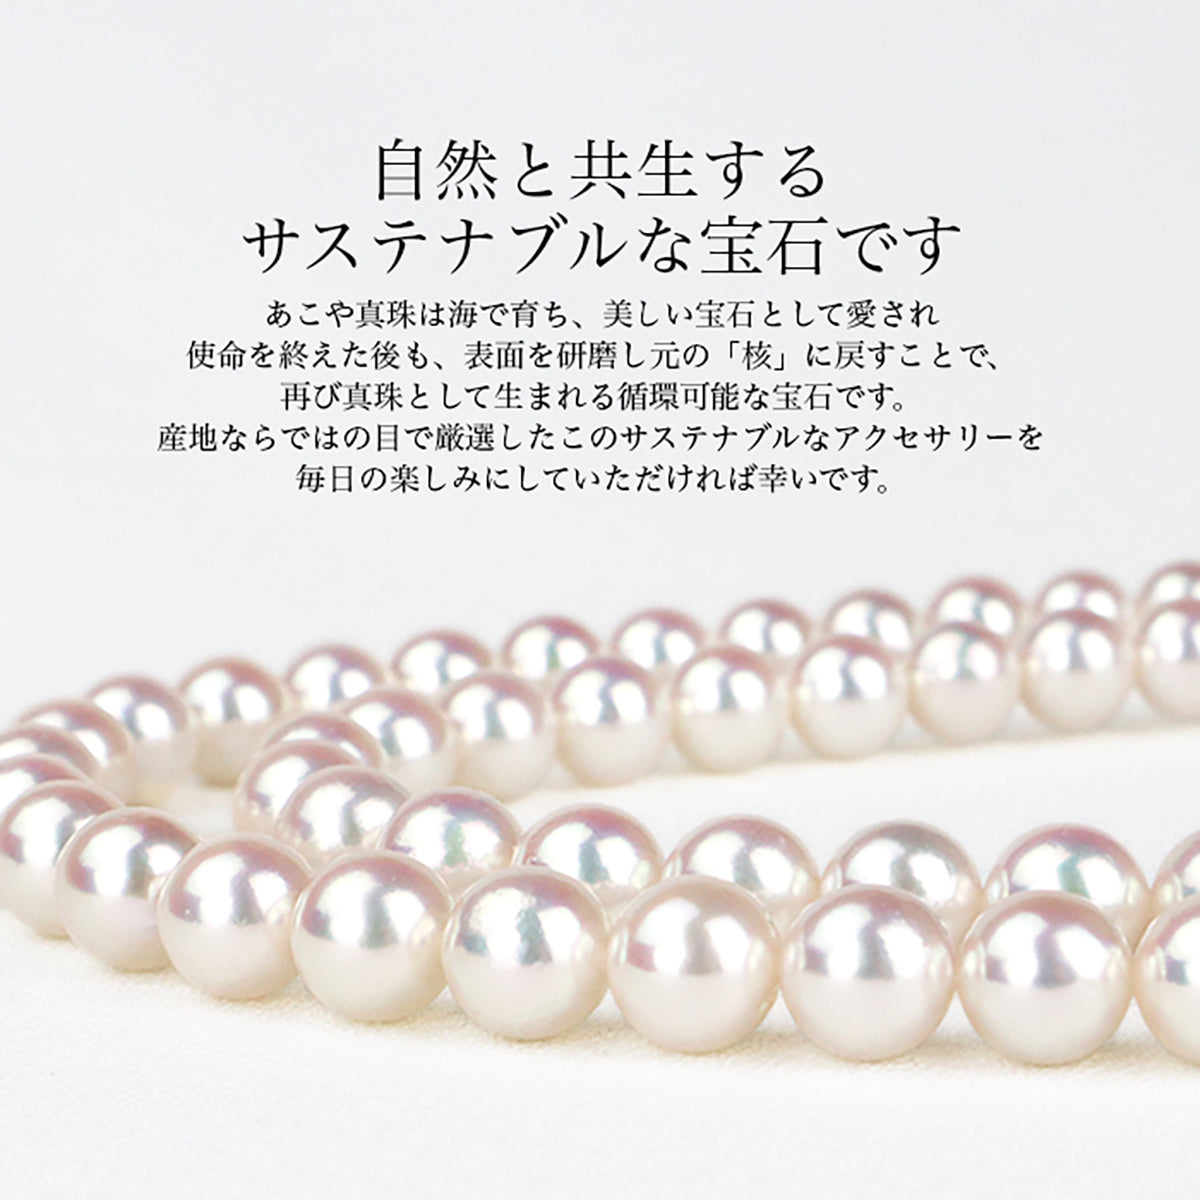 [天然白色] [花珠珍珠] 无色 Akoya 珍珠正装项链 2 件套 [8.0-8.5 毫米]（耳环/耳环）Akoya 珍珠真品证书存储盒包含仪式